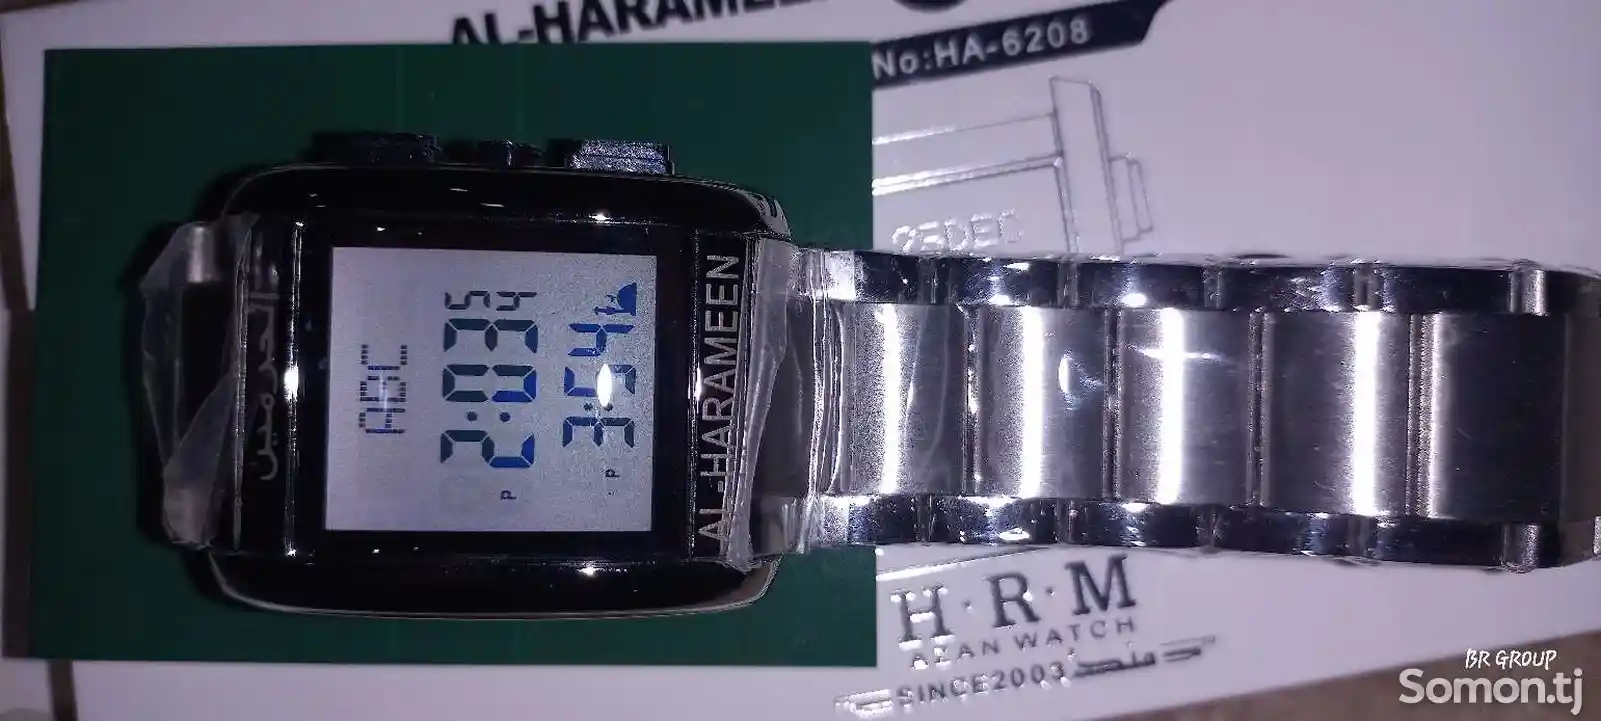 Часы Al-Harameen-1